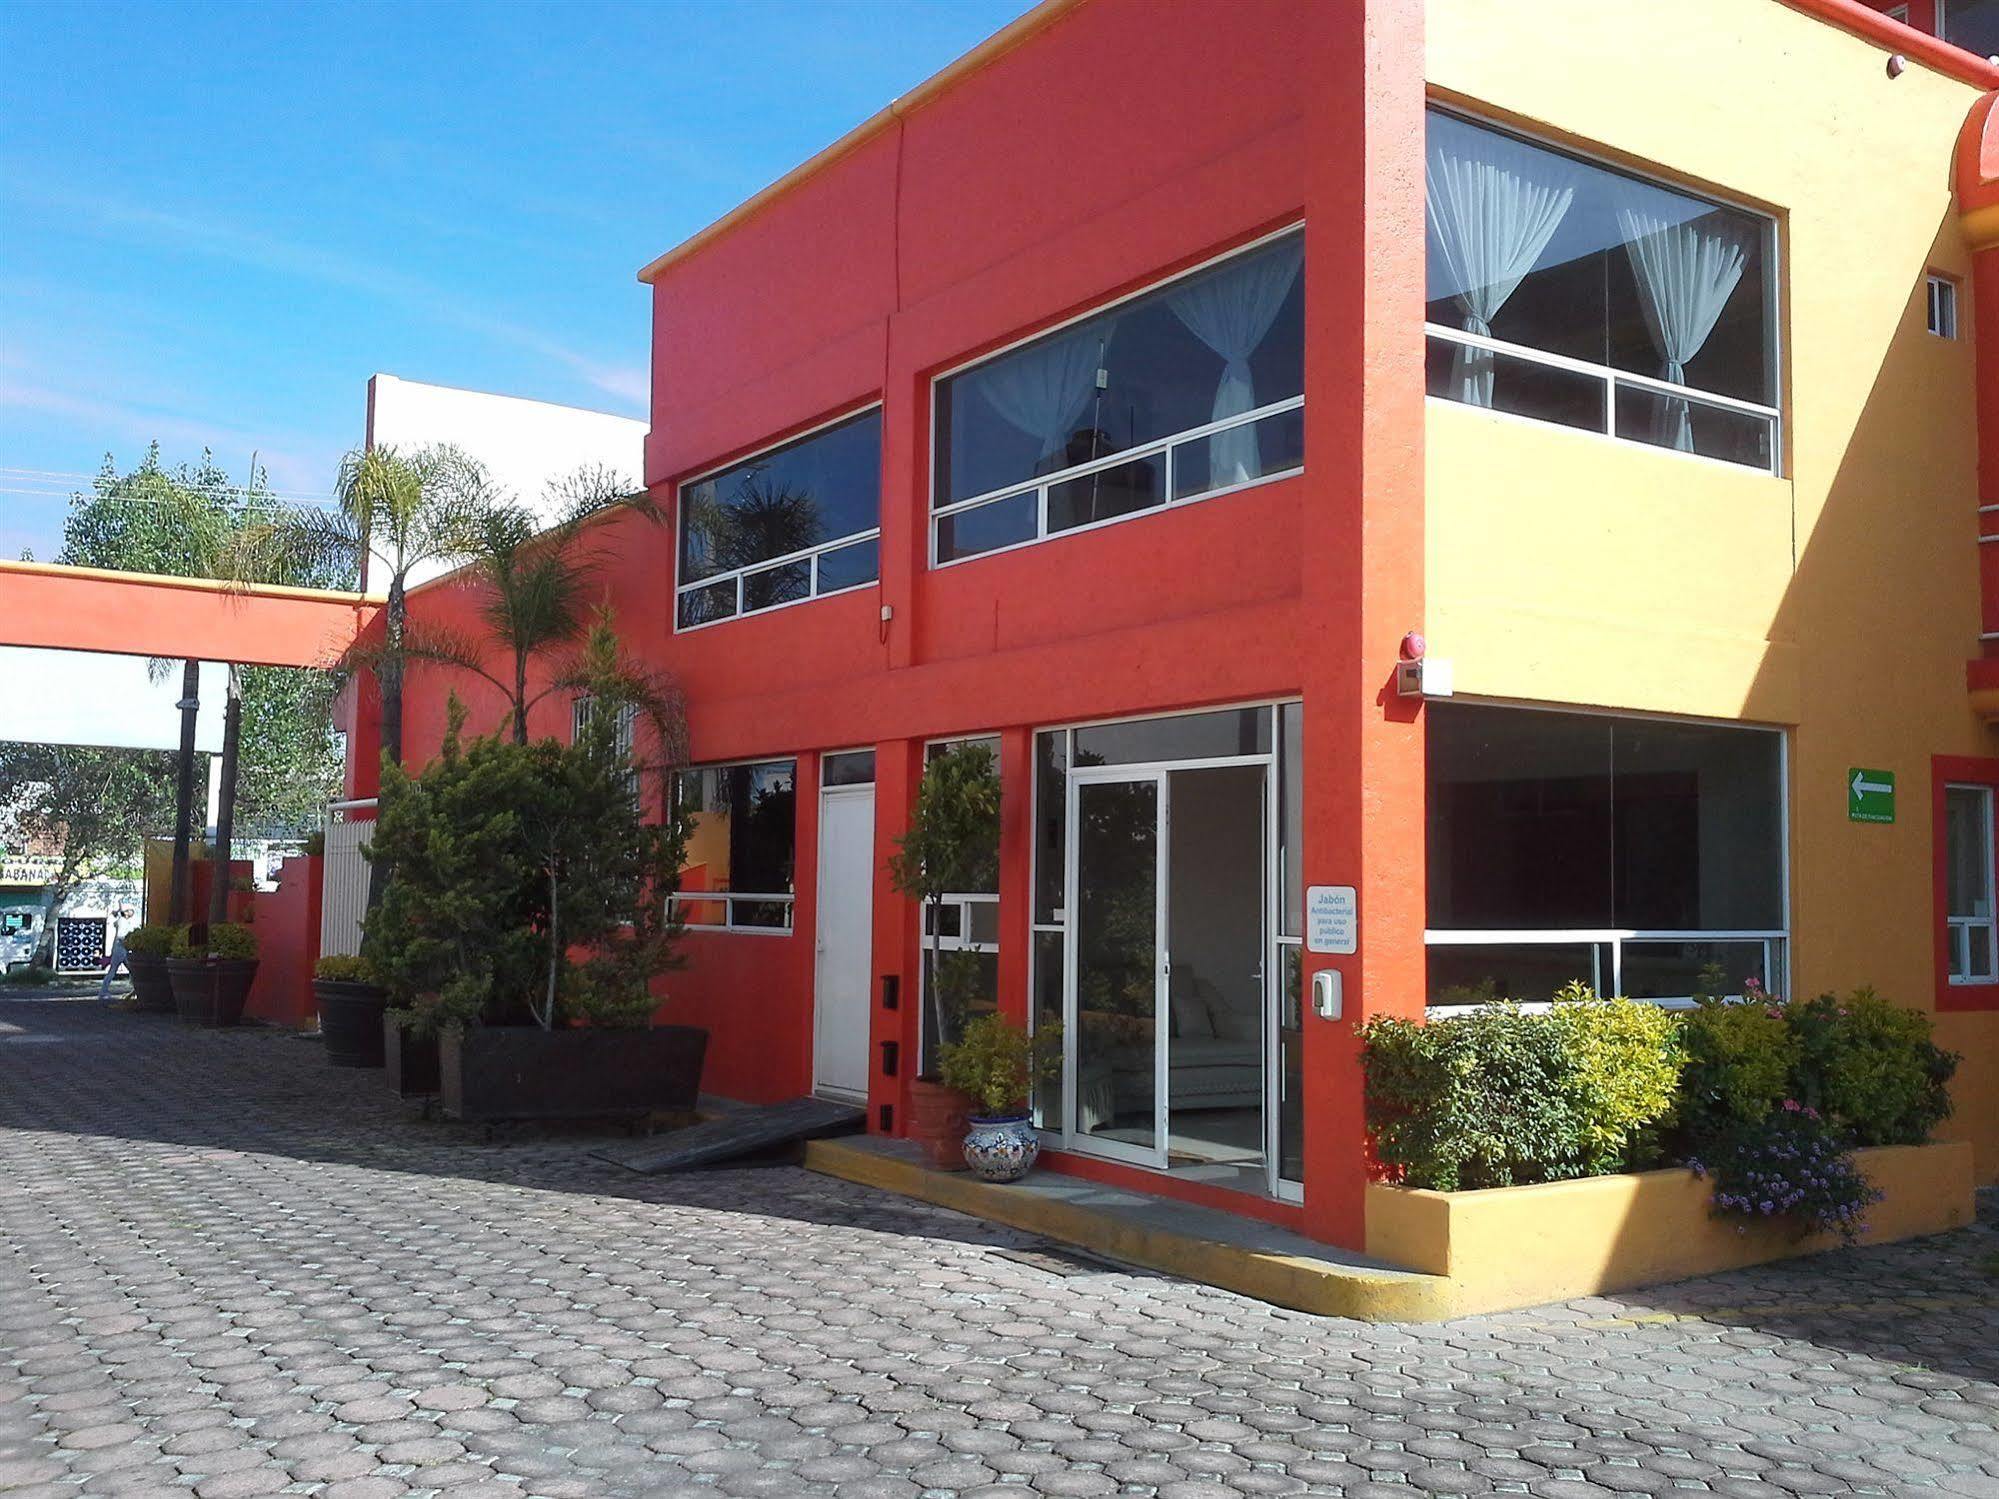 La Quinta Puebla Hotel Exterior foto